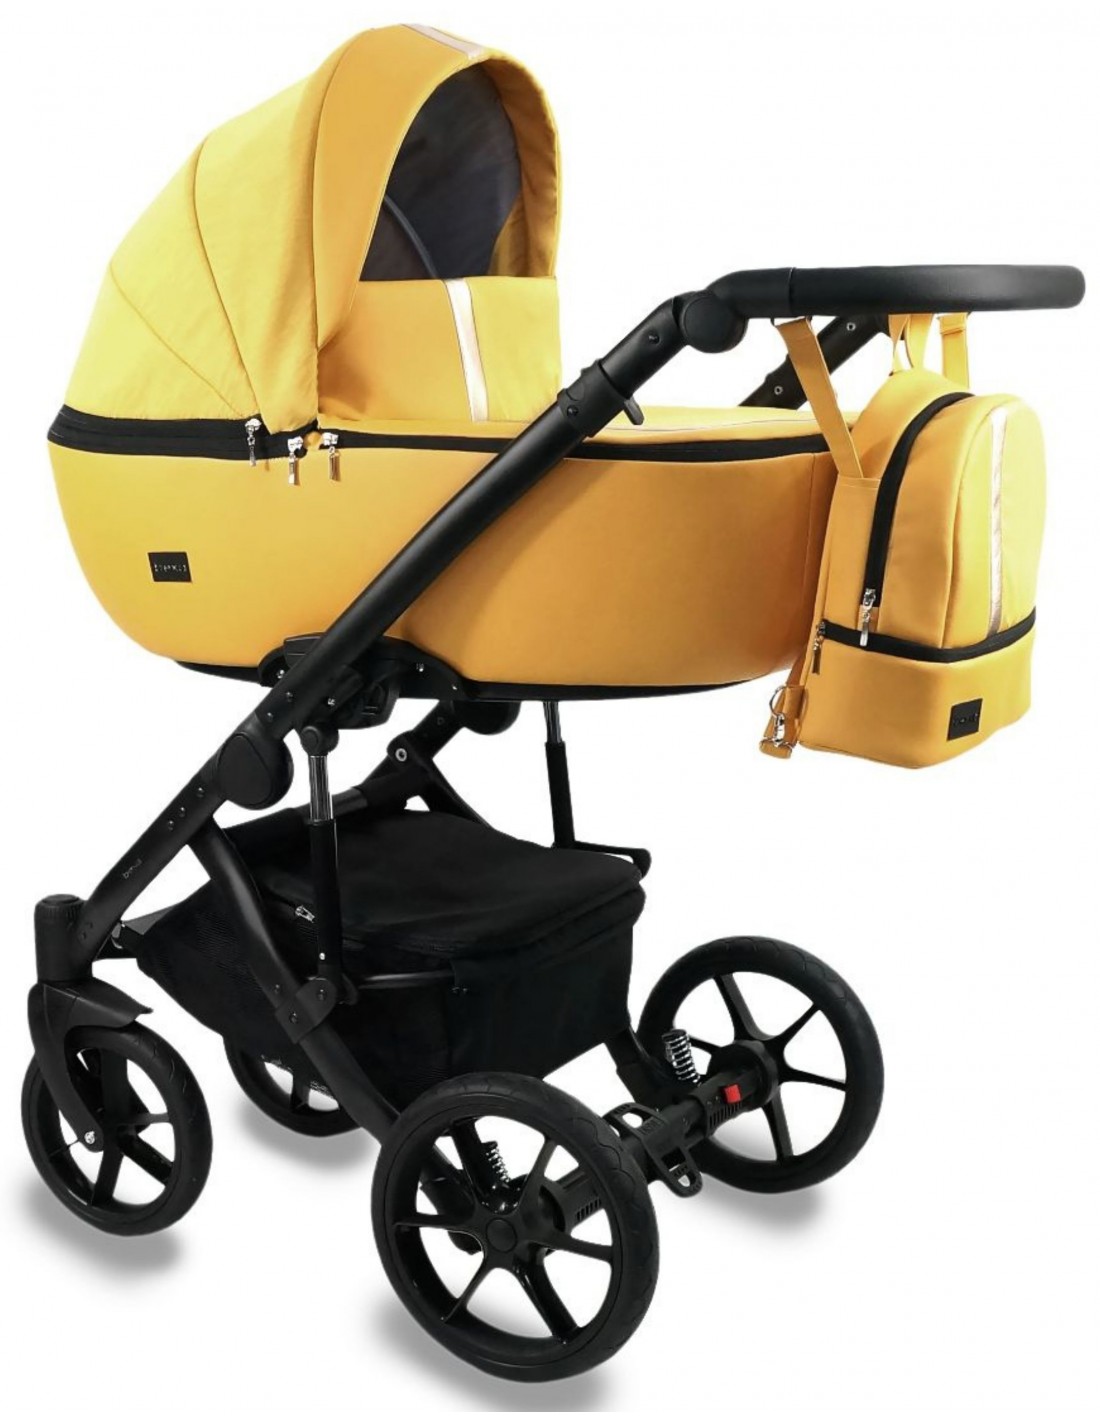 Oferta carrito de bebé Bexa Air con silla de coche. Ahorro inteligente con  bebés